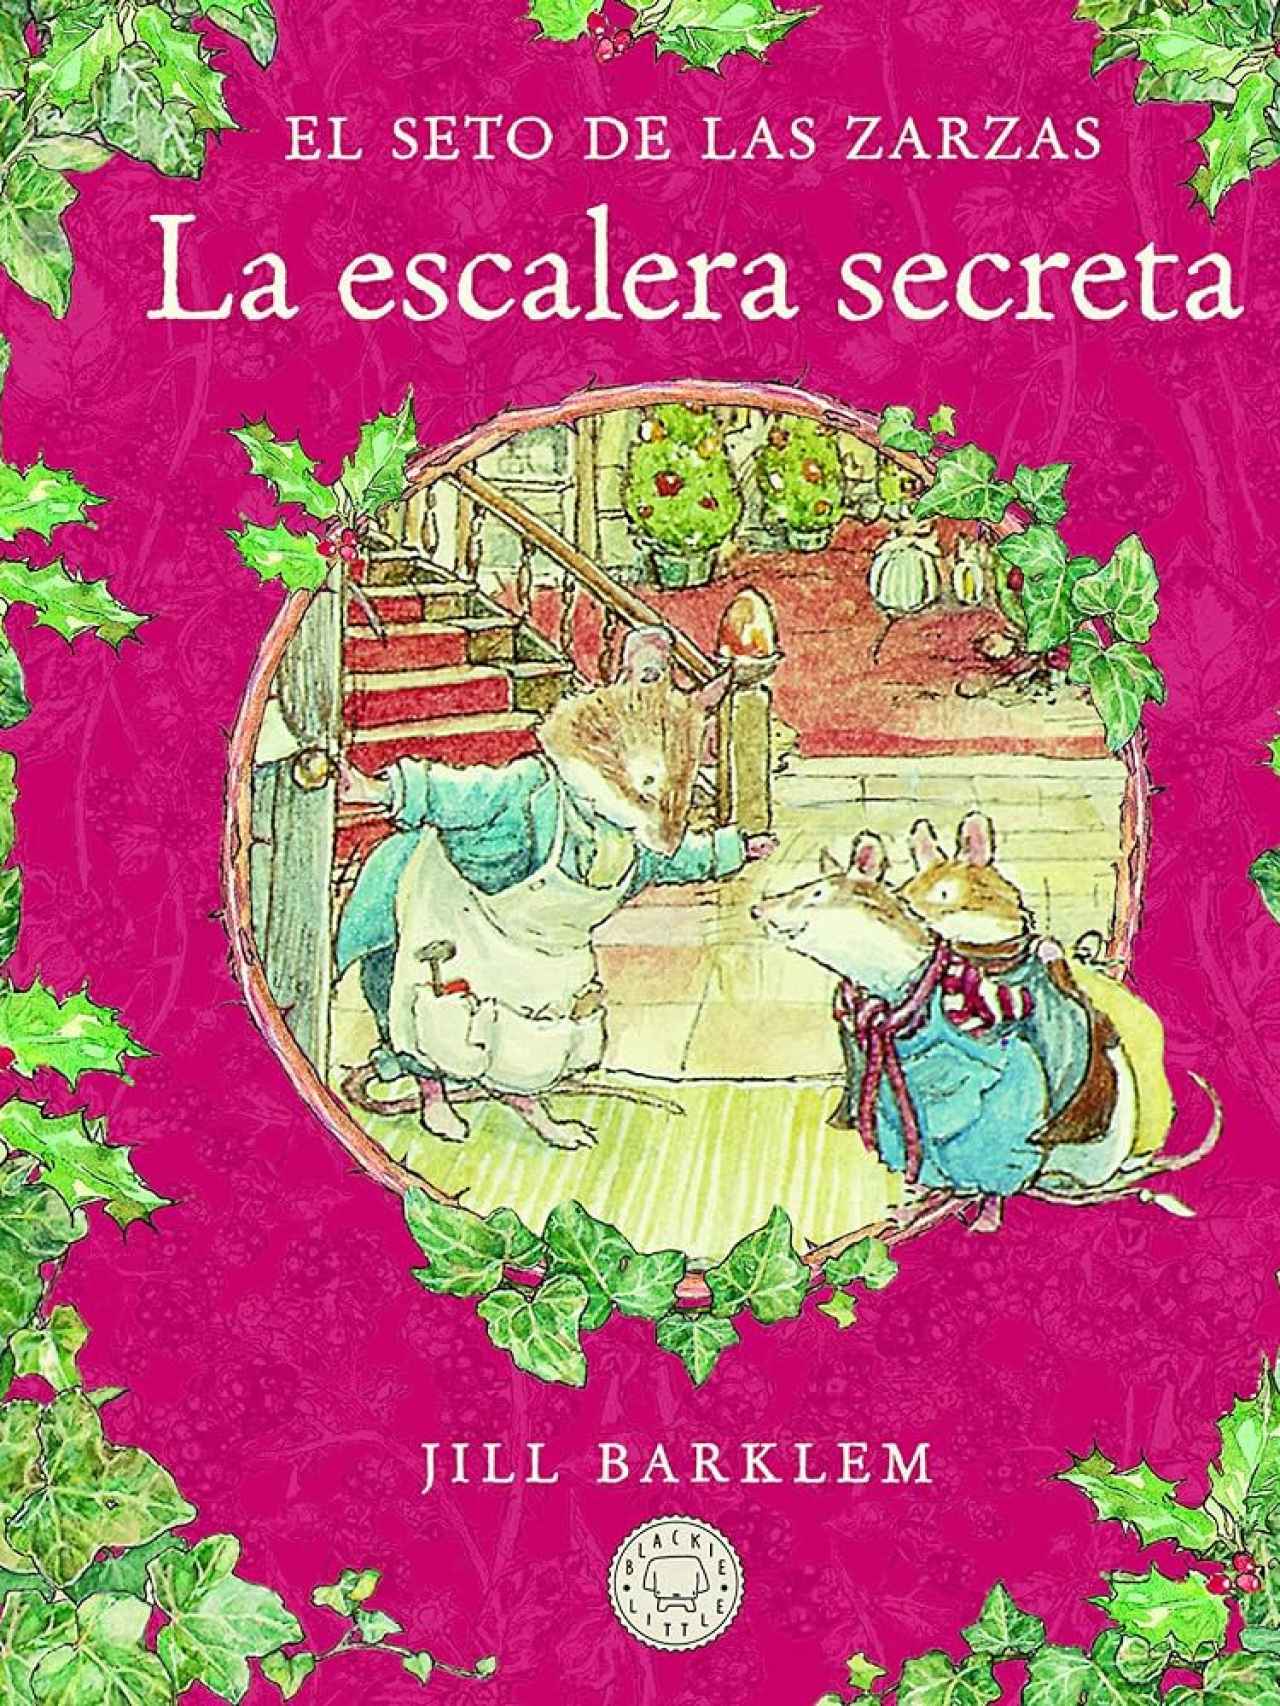 'La escalera secreta de Jill Barklem'